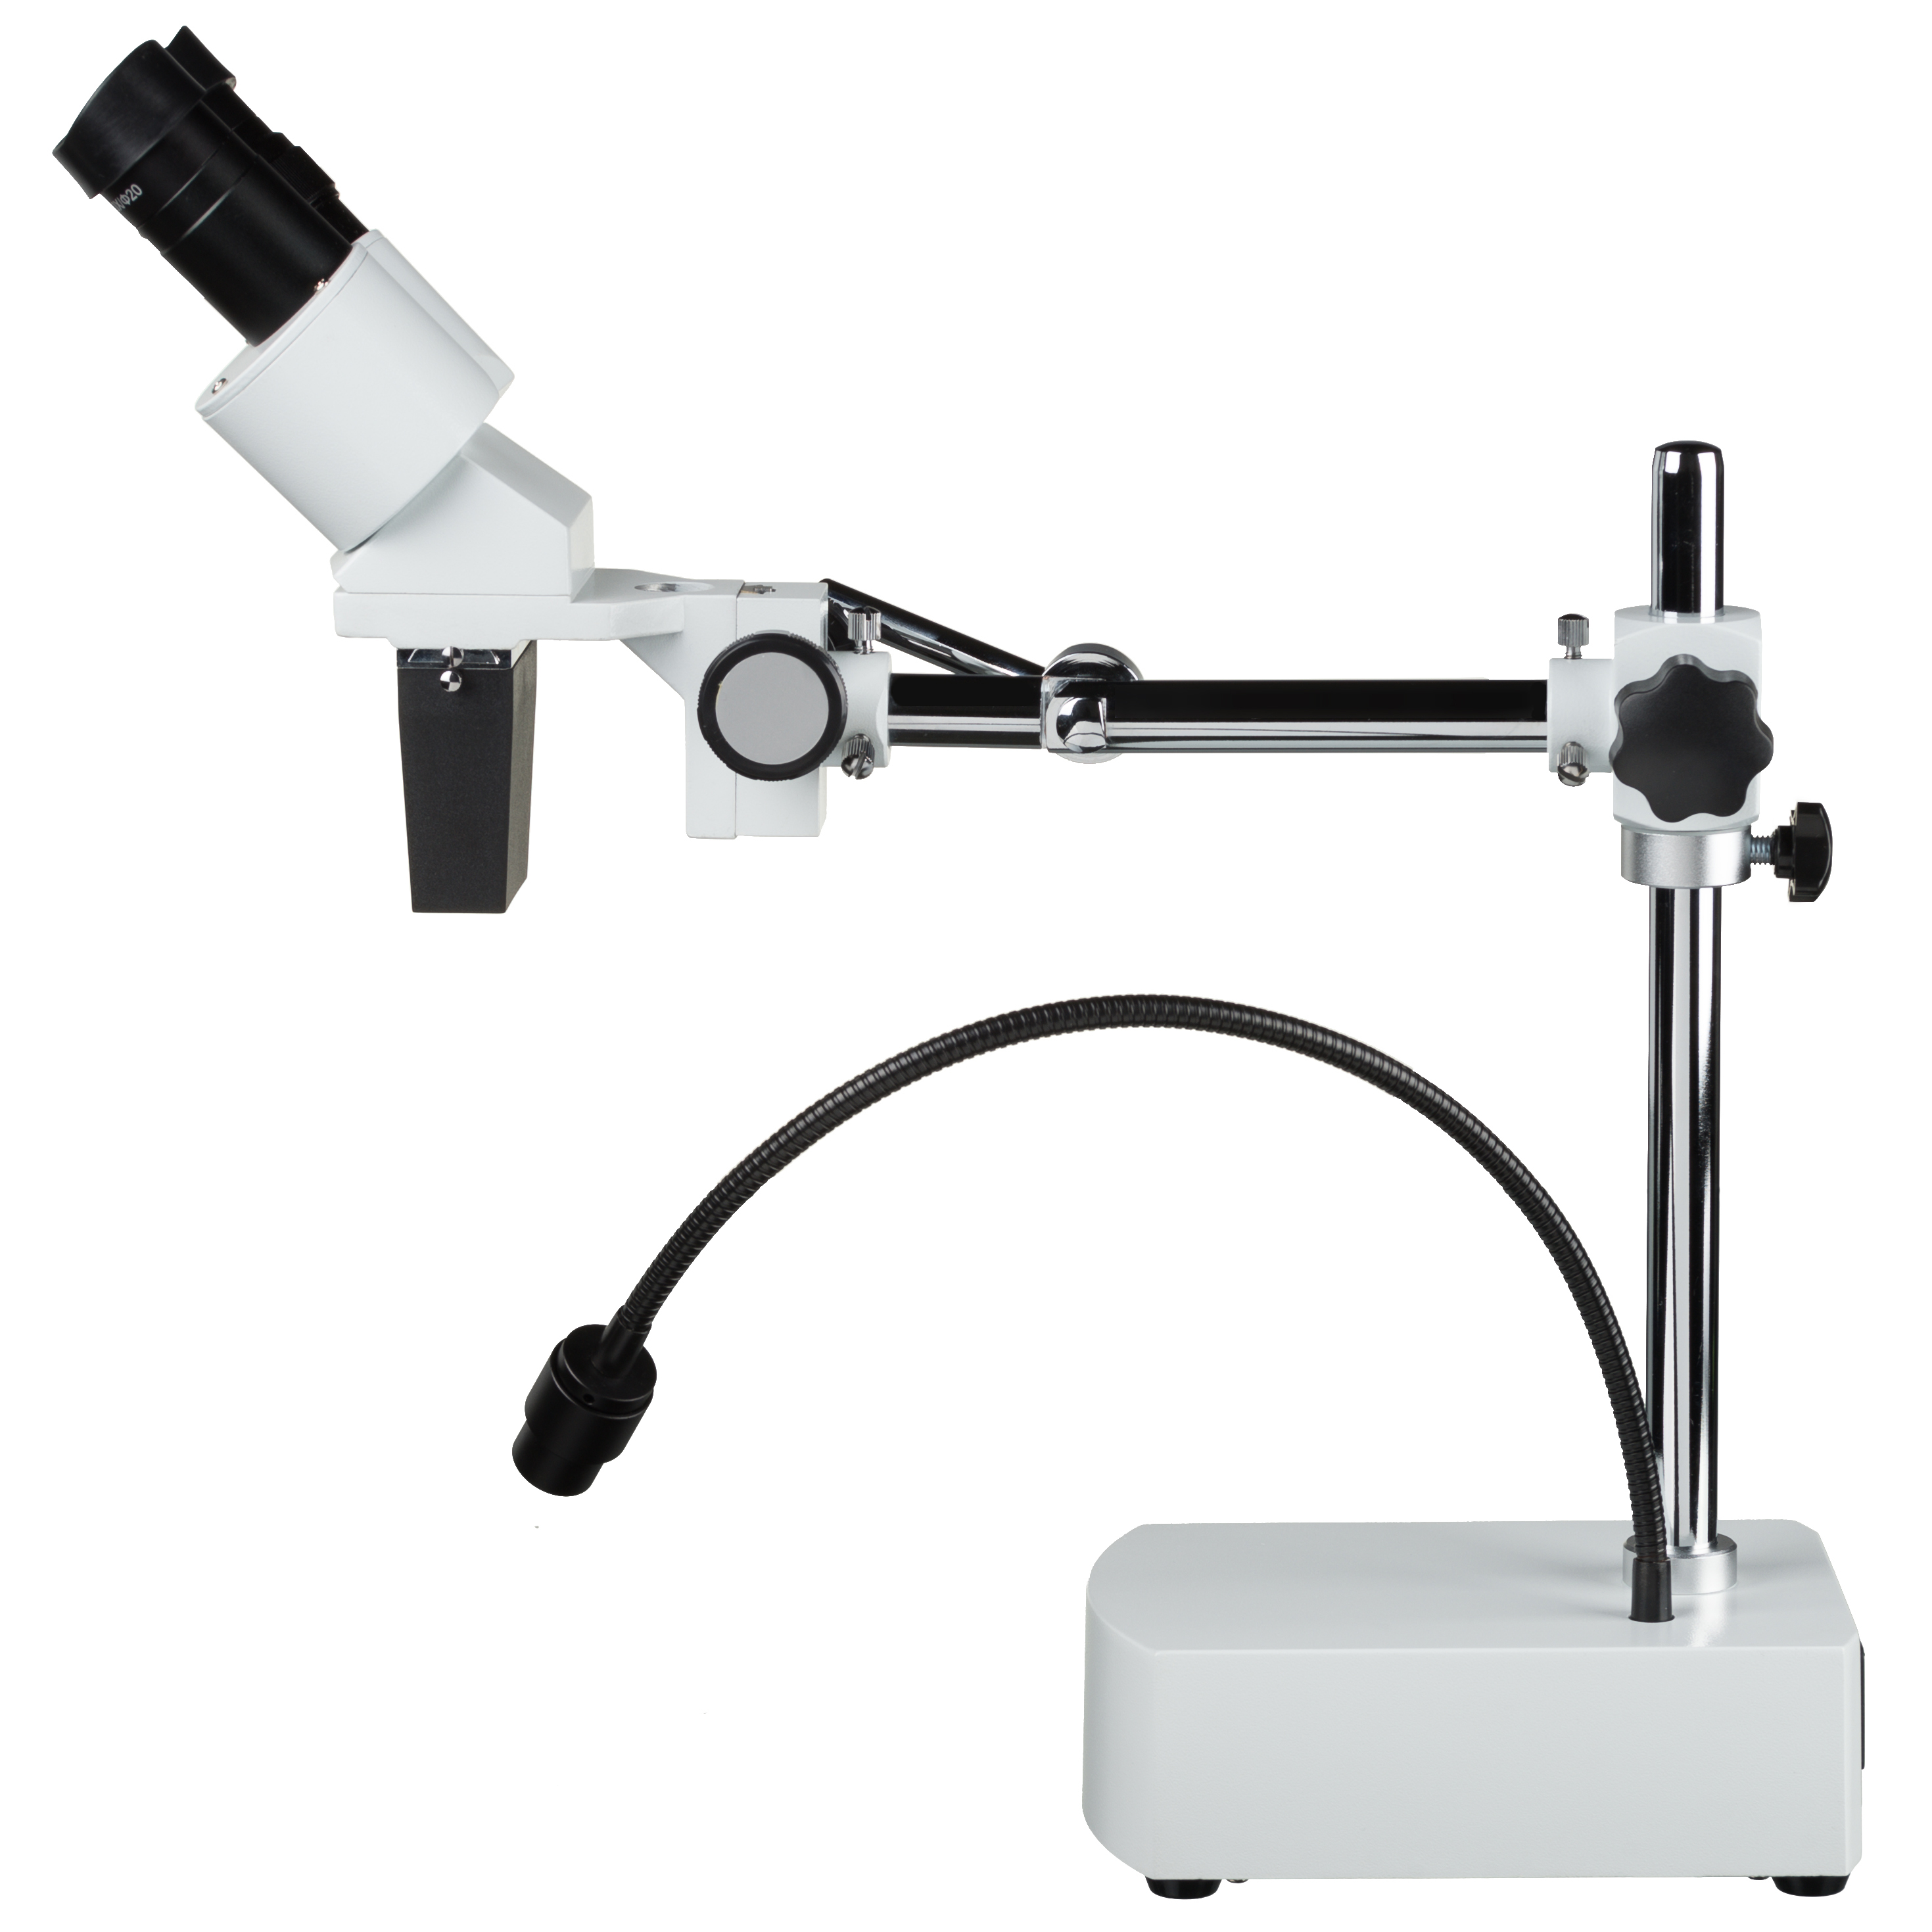 BRESSER Biorit ICD-CS 5x-20x Auflicht Mikroskop LED (30.5)